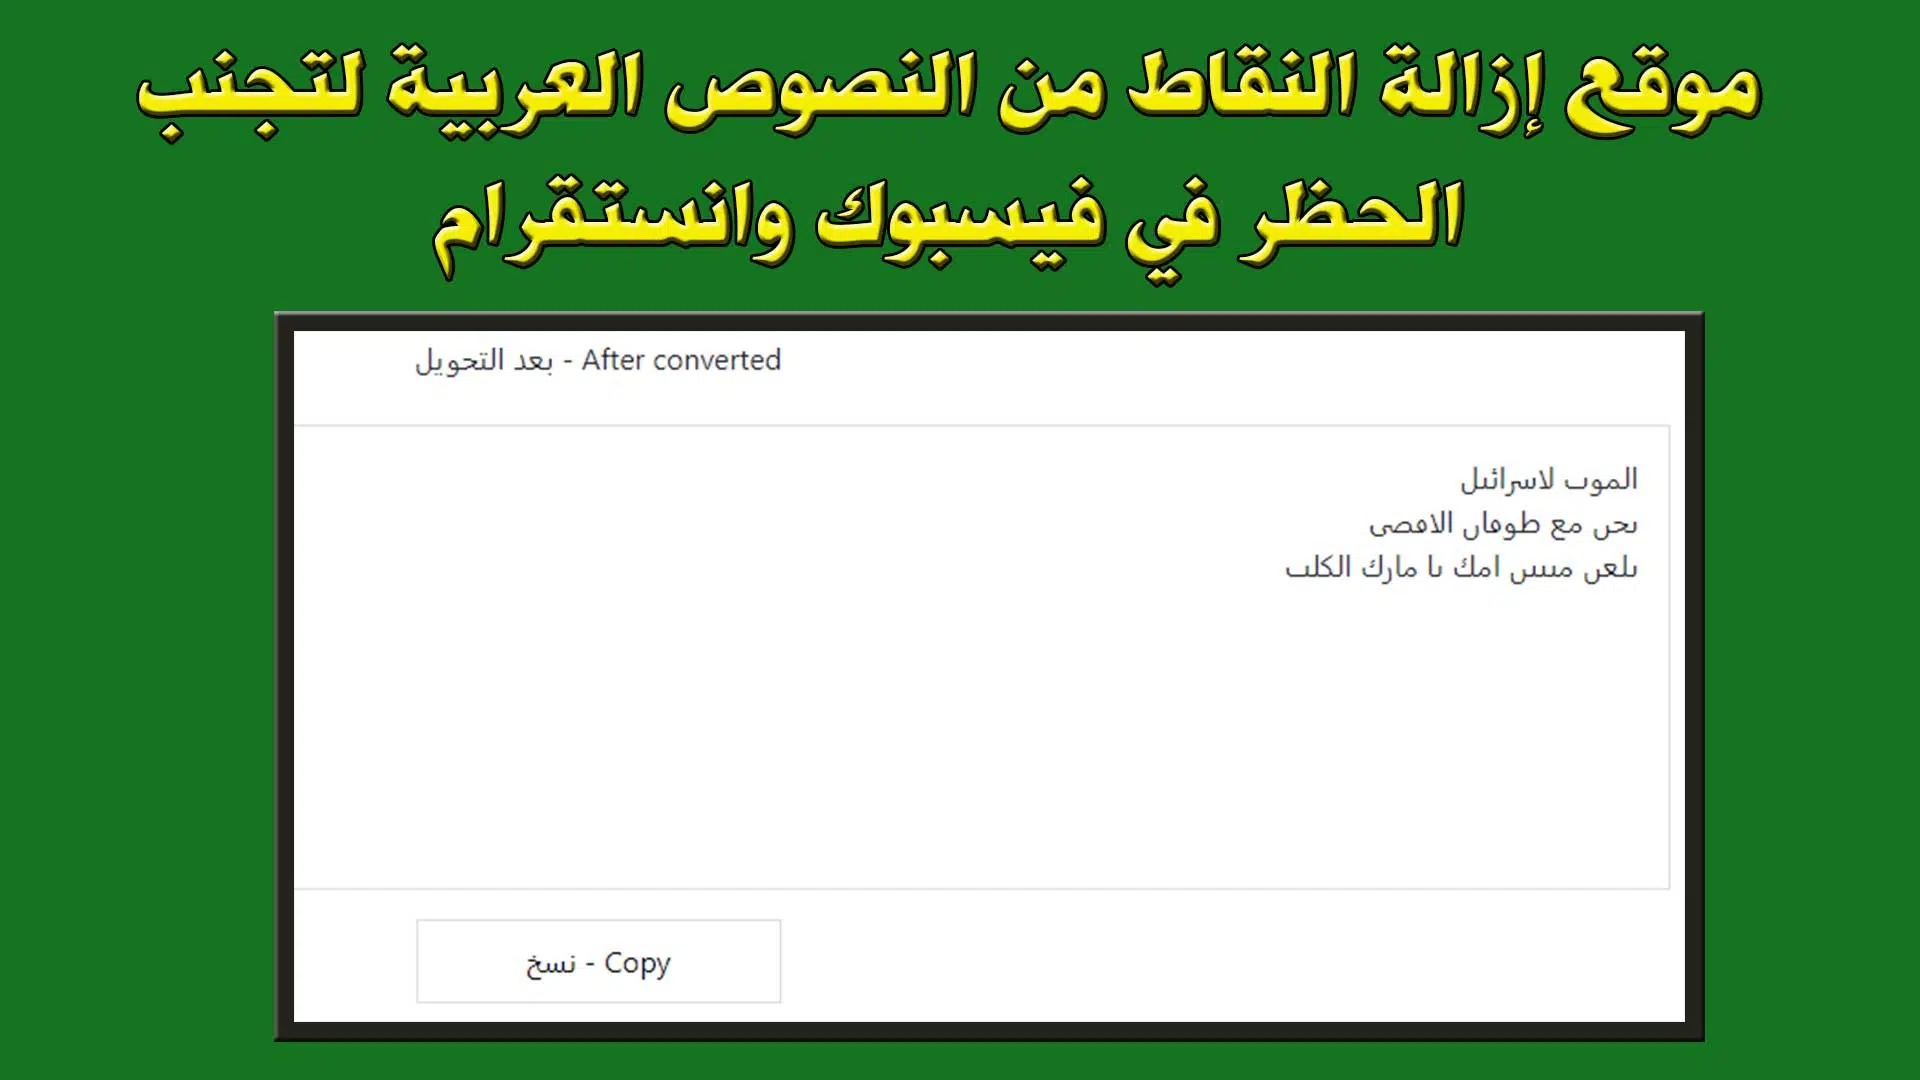 موقع إزالة النقاط من النصوص العربية لتجنب الحظر في فيسبوك وانستقرام